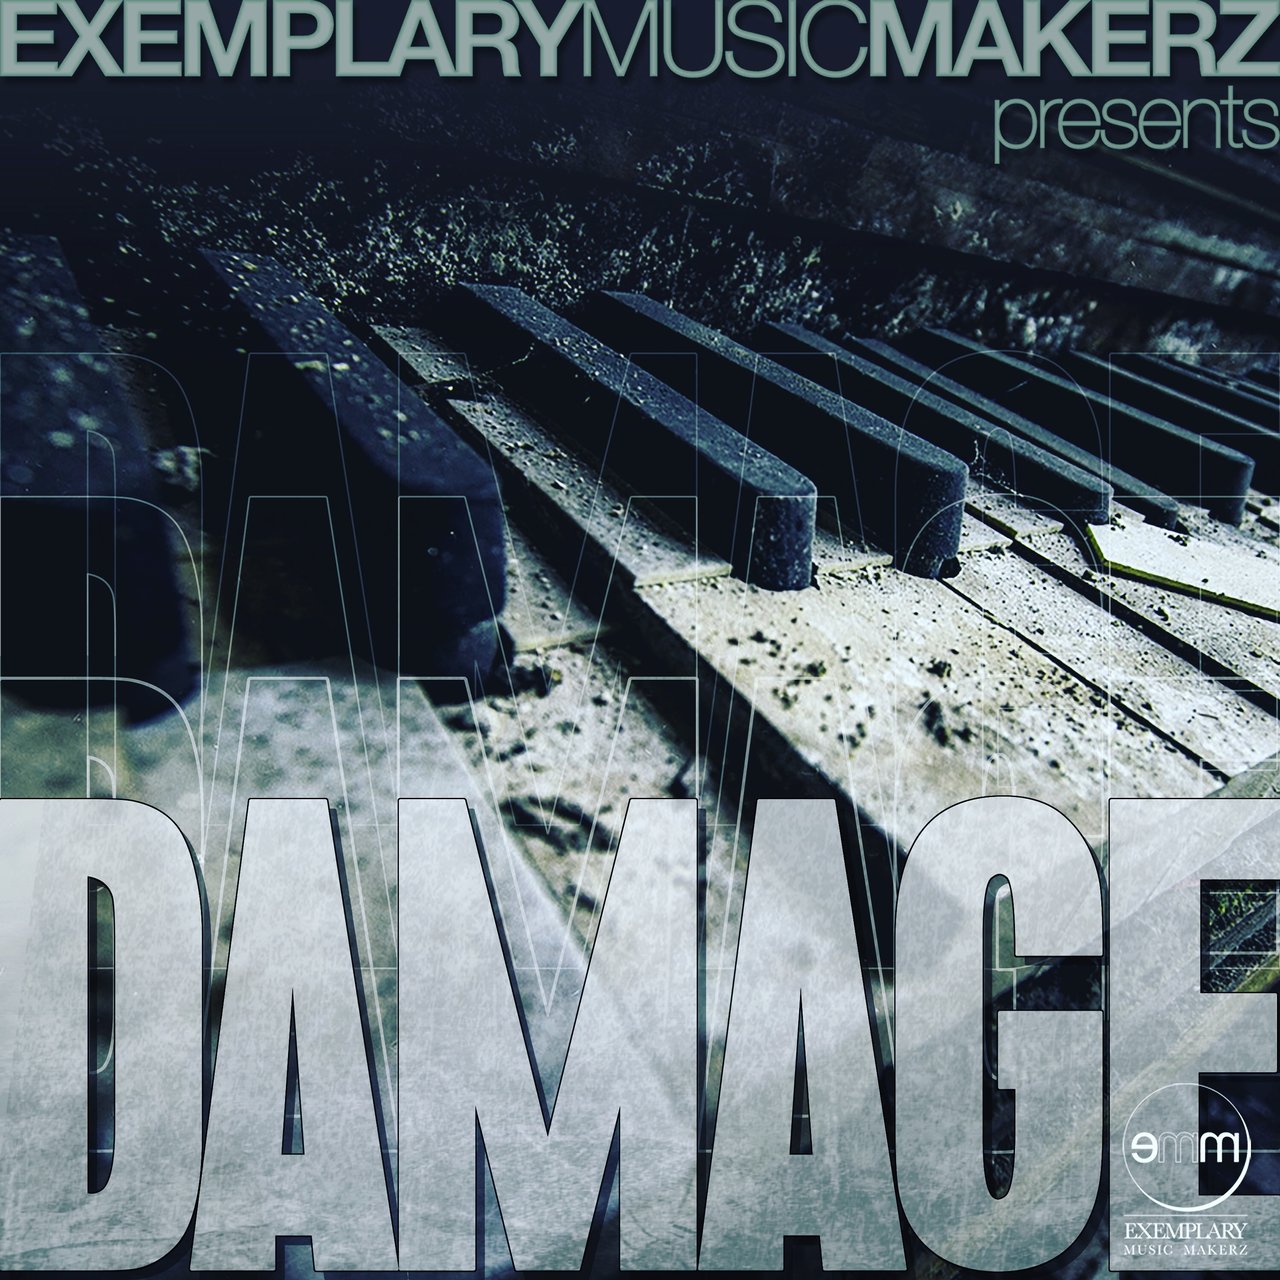 Muzikman Edition - Damage / Exemplary Music Makerz